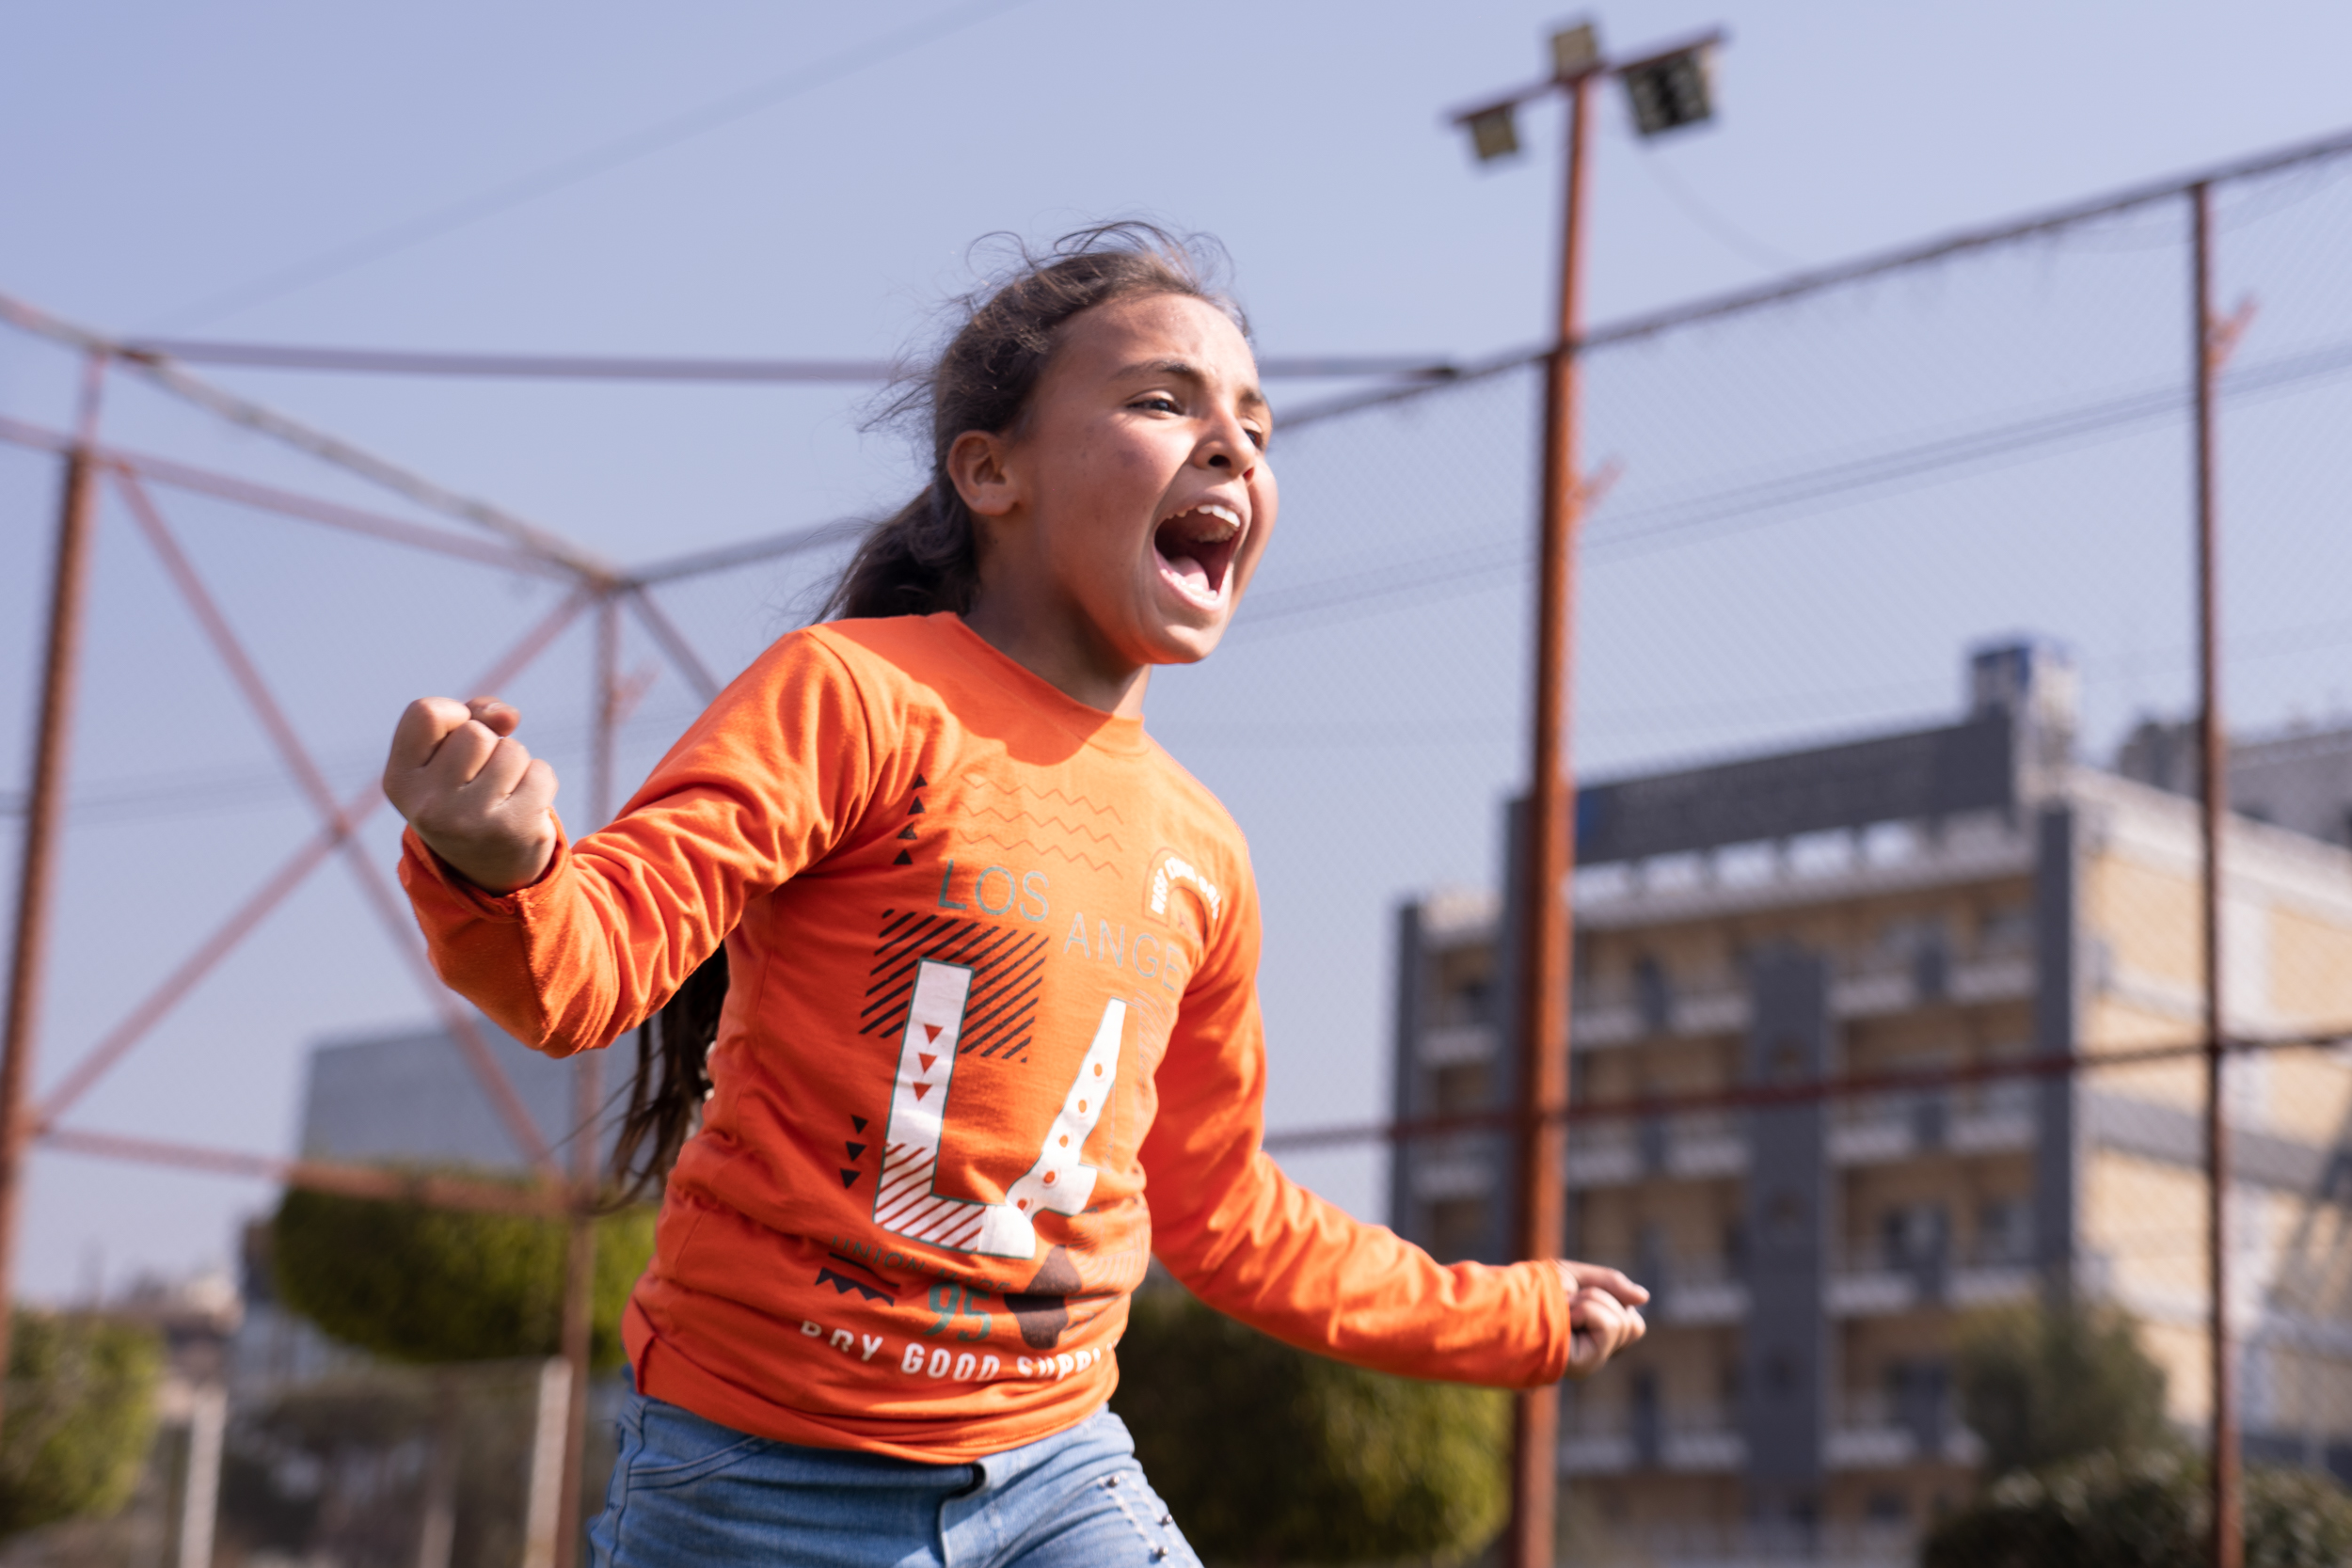 Das Bild zeigt ein Mädchen auf dem Sportplatz, das rennt und gleichzeitig laut ruft. Sie hat beide Arme ausgetreckt und wirkt euphorisch.